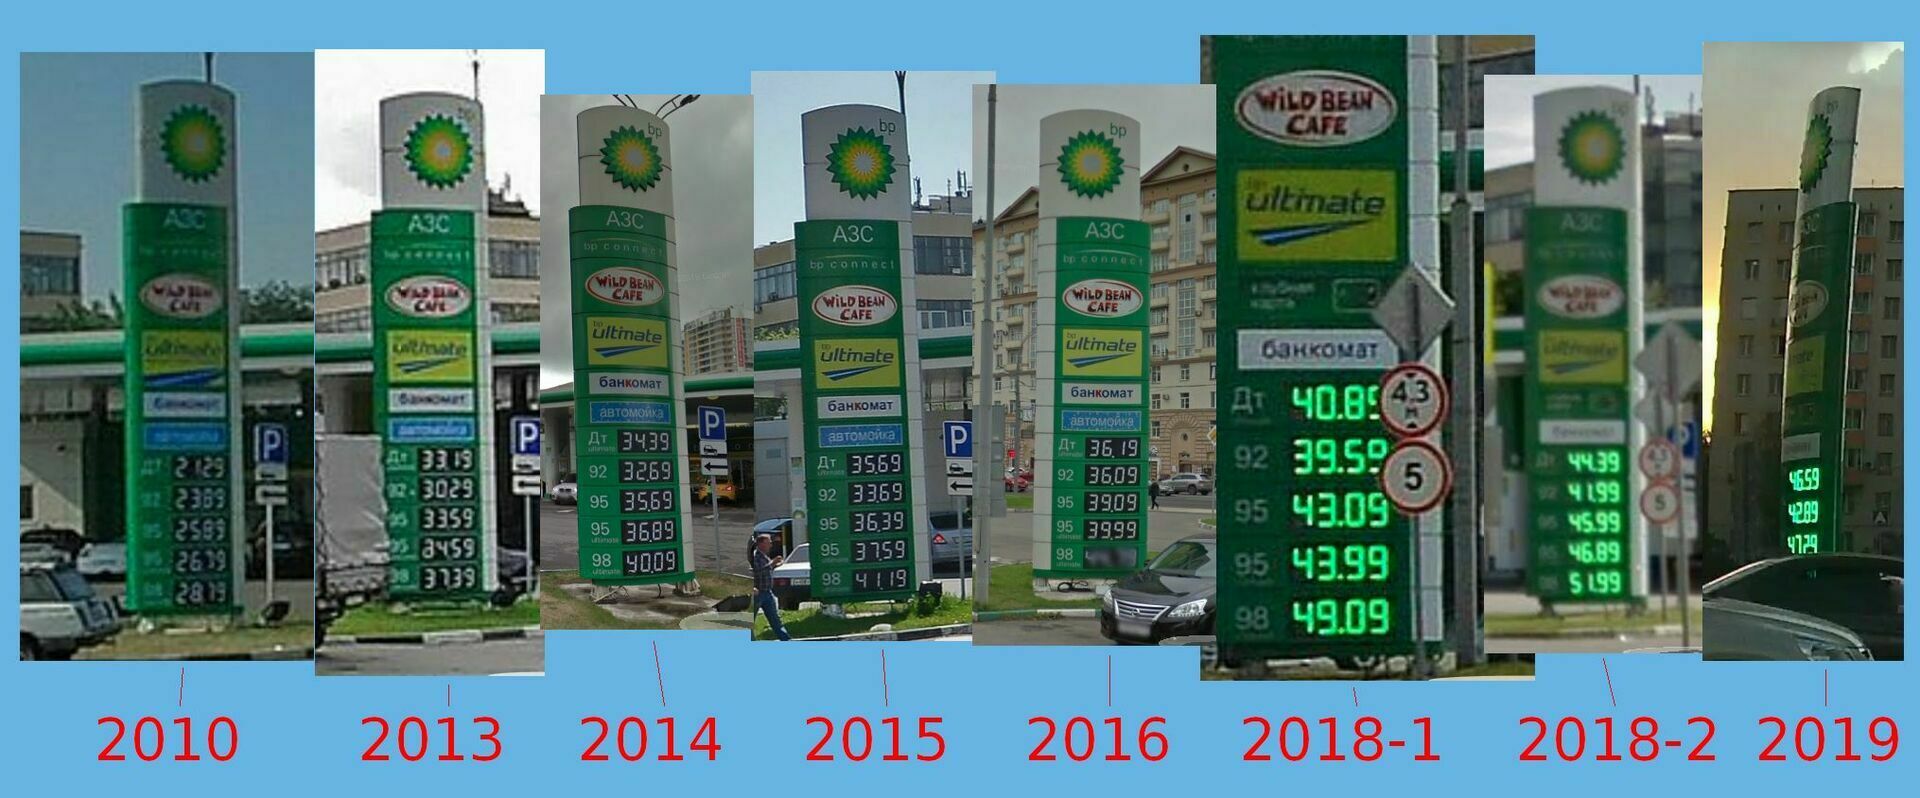 Цифра дня: за 10 лет цены на бензин выросли вдвое, чего не скажешь про зарплаты